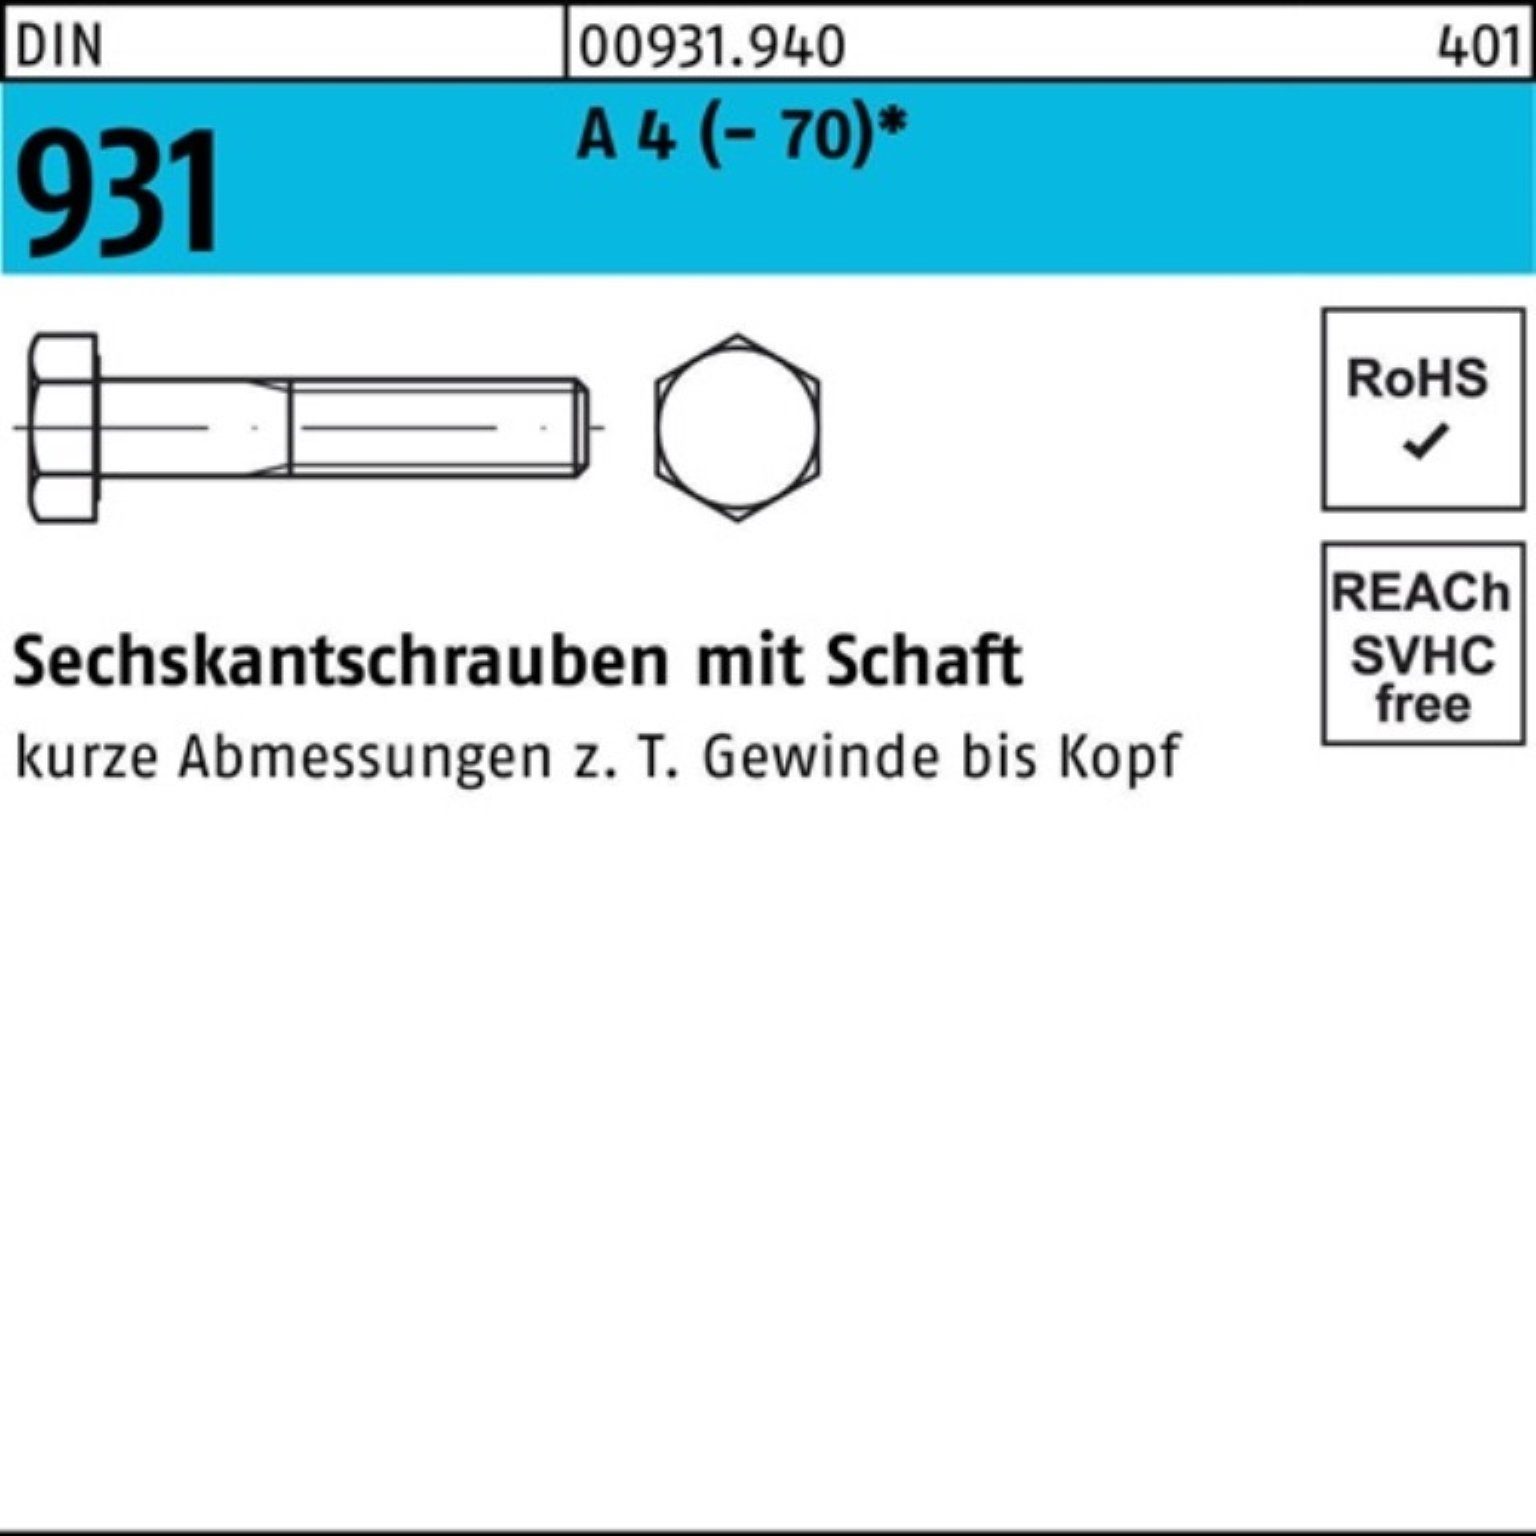 Reyher Sechskantschraube 100er Pack Sechskantschraube 4 (70) M24x A 75 DIN 1 Stüc 931 Schaft